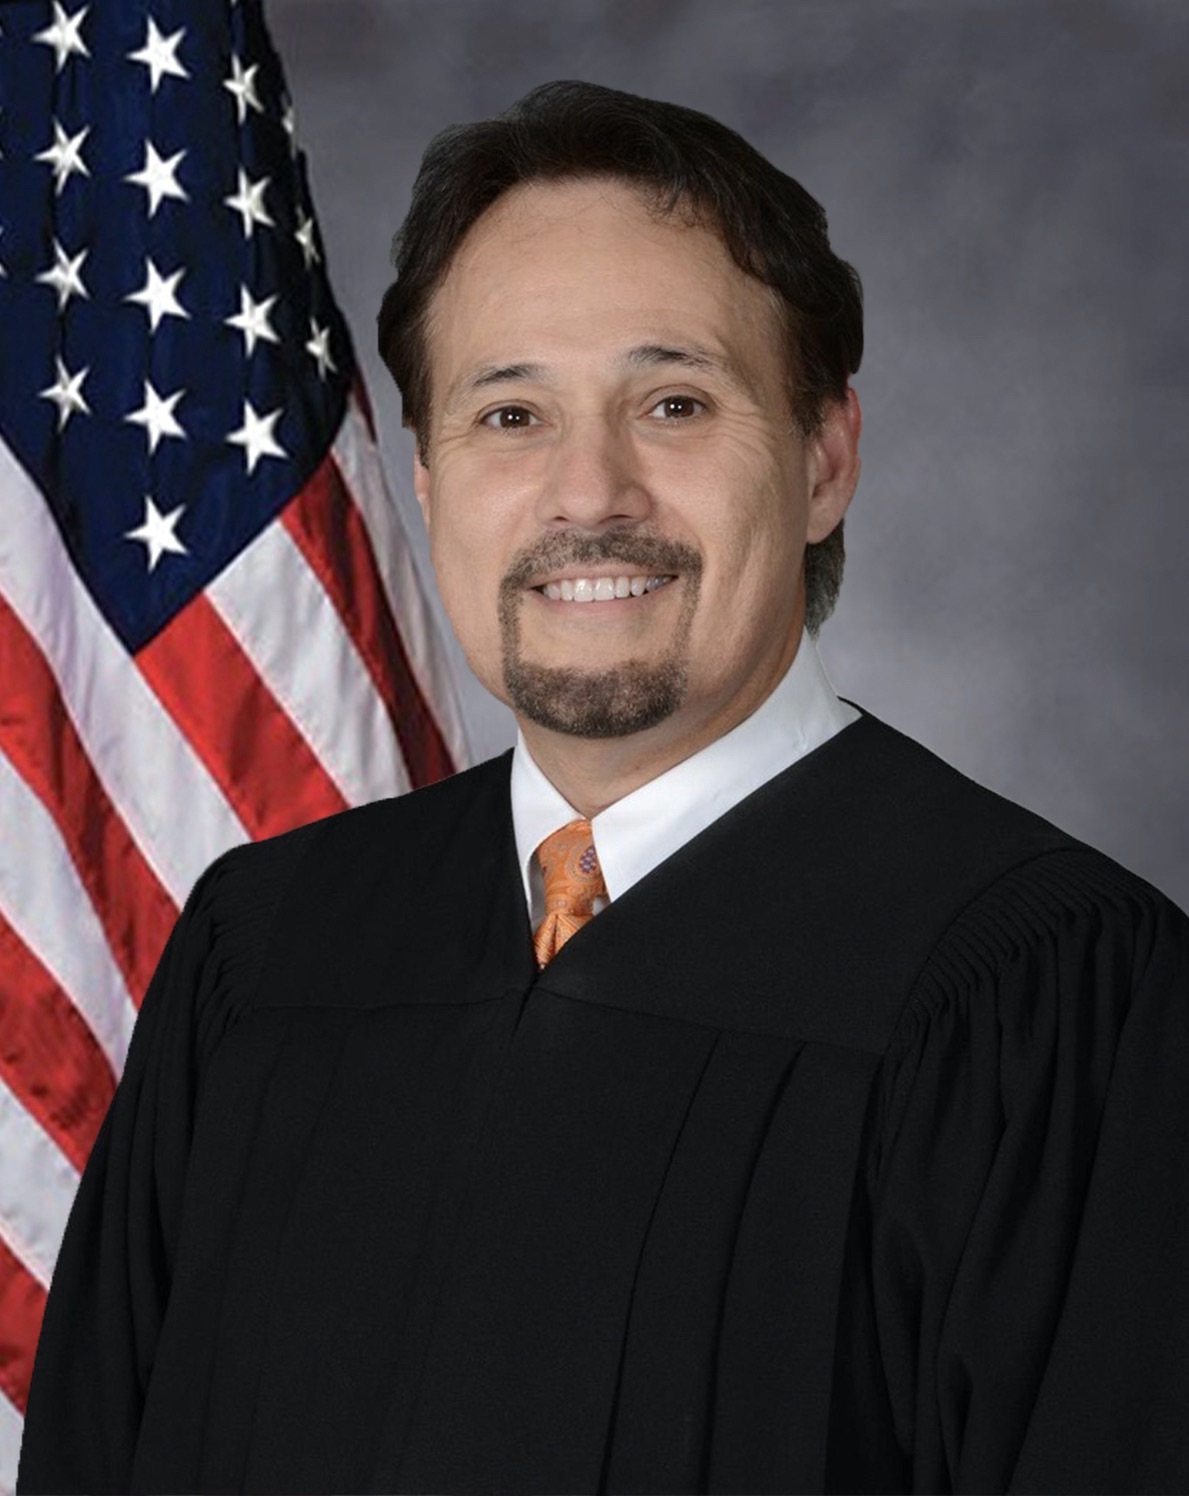 Judiciary – Seventeenth Judicial Circuit of Florida